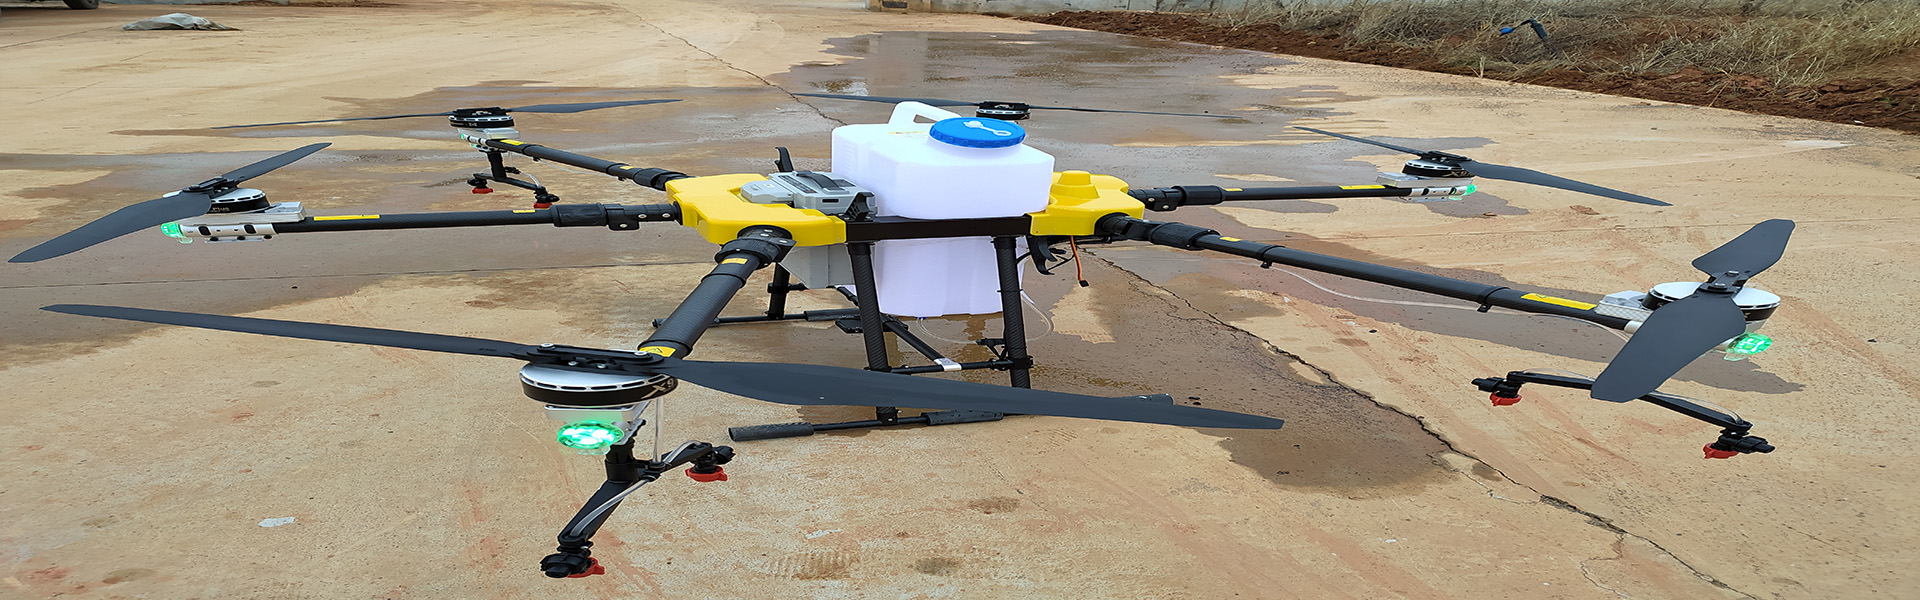 landwirtschaftliche UAV, Pflanzenschutz UAV, landwirtschaftliche UAV -Zubehör,Shenzhen fnyuav technology co.LTD